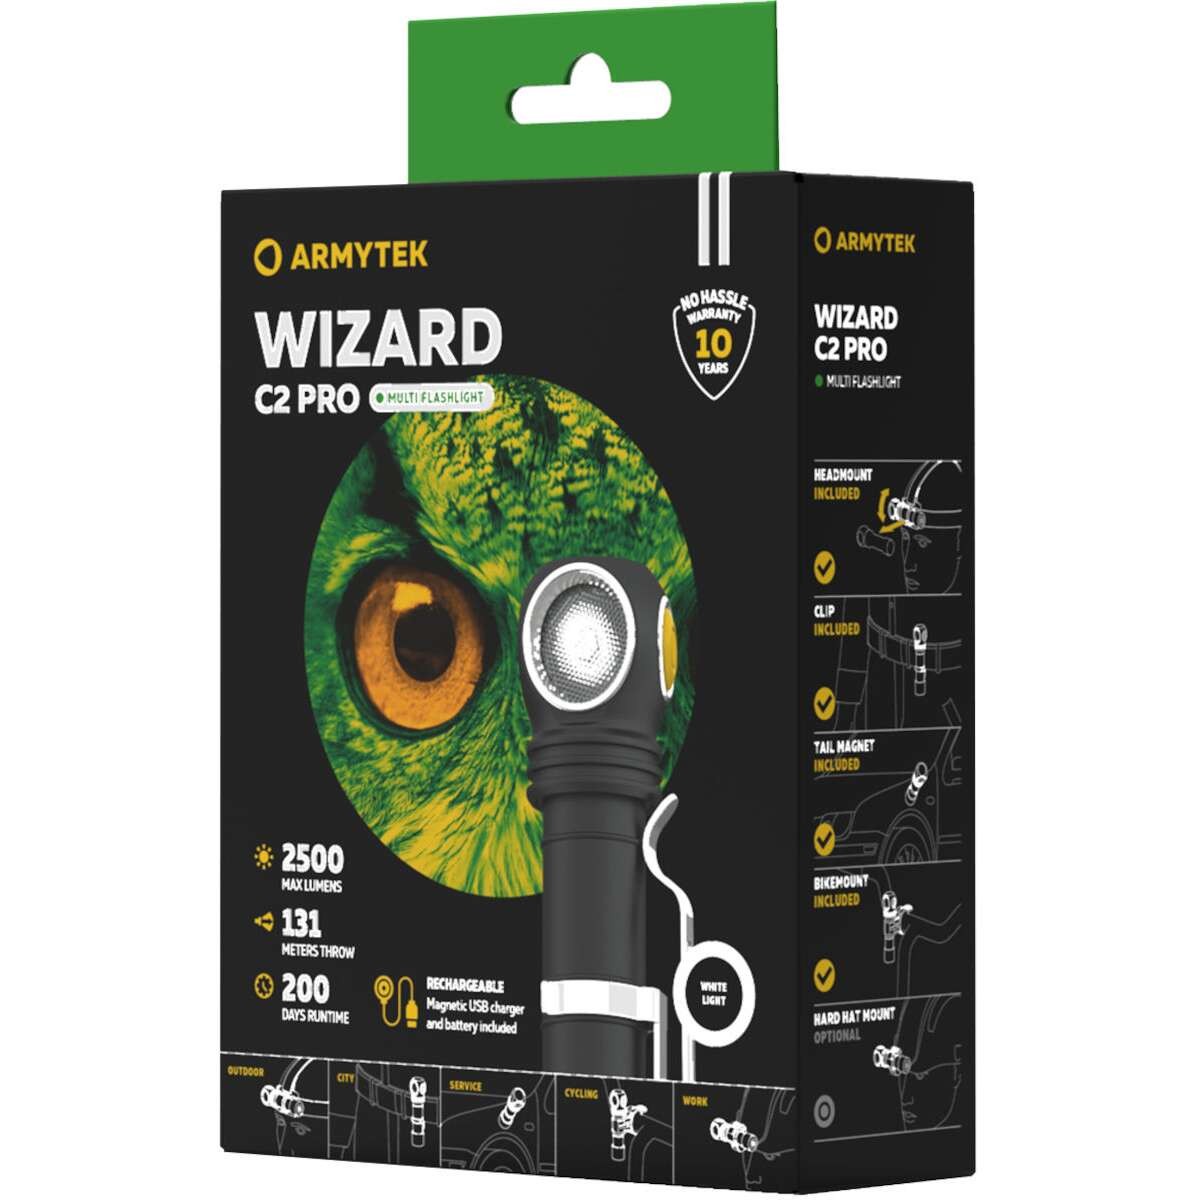 Armytek Wizard C2 Pro, Taschenlampe, Stirnlampe und Fahrradlampe